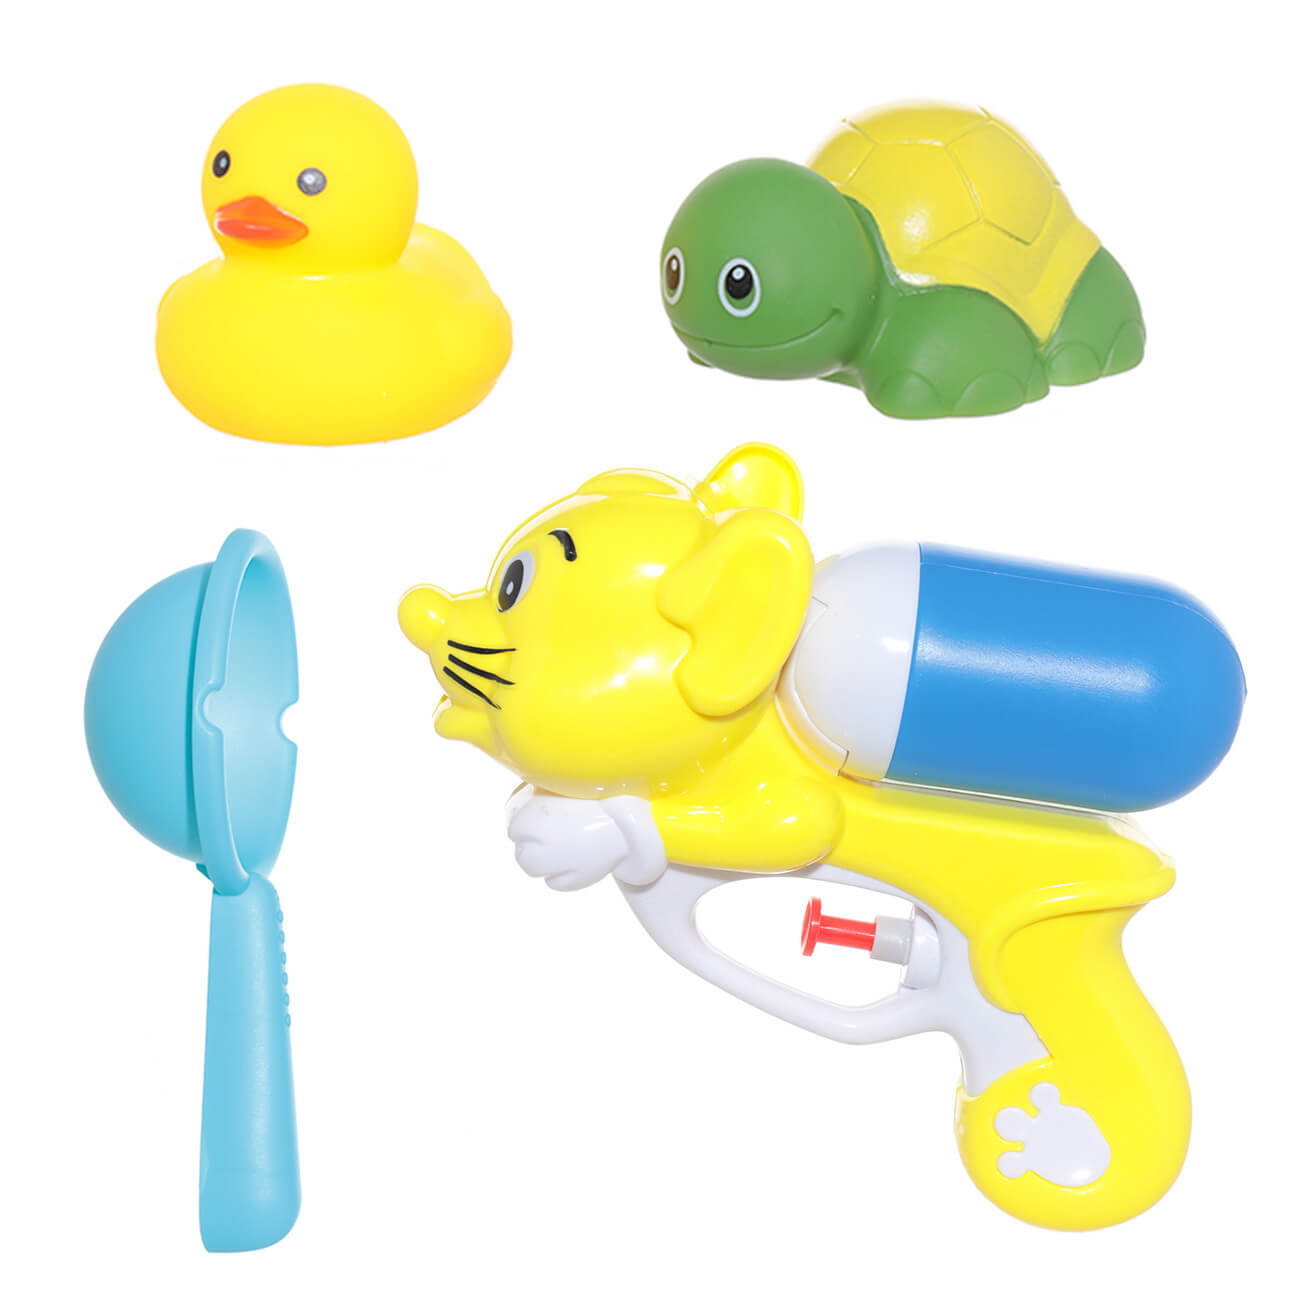 Набор игрушек для купания, 4 пр, водный пистолет/игрушки, резина/пластик, желтый, Duck набор игрушек для купания 4 пр водный пистолет игрушки резина пластик желтый duck